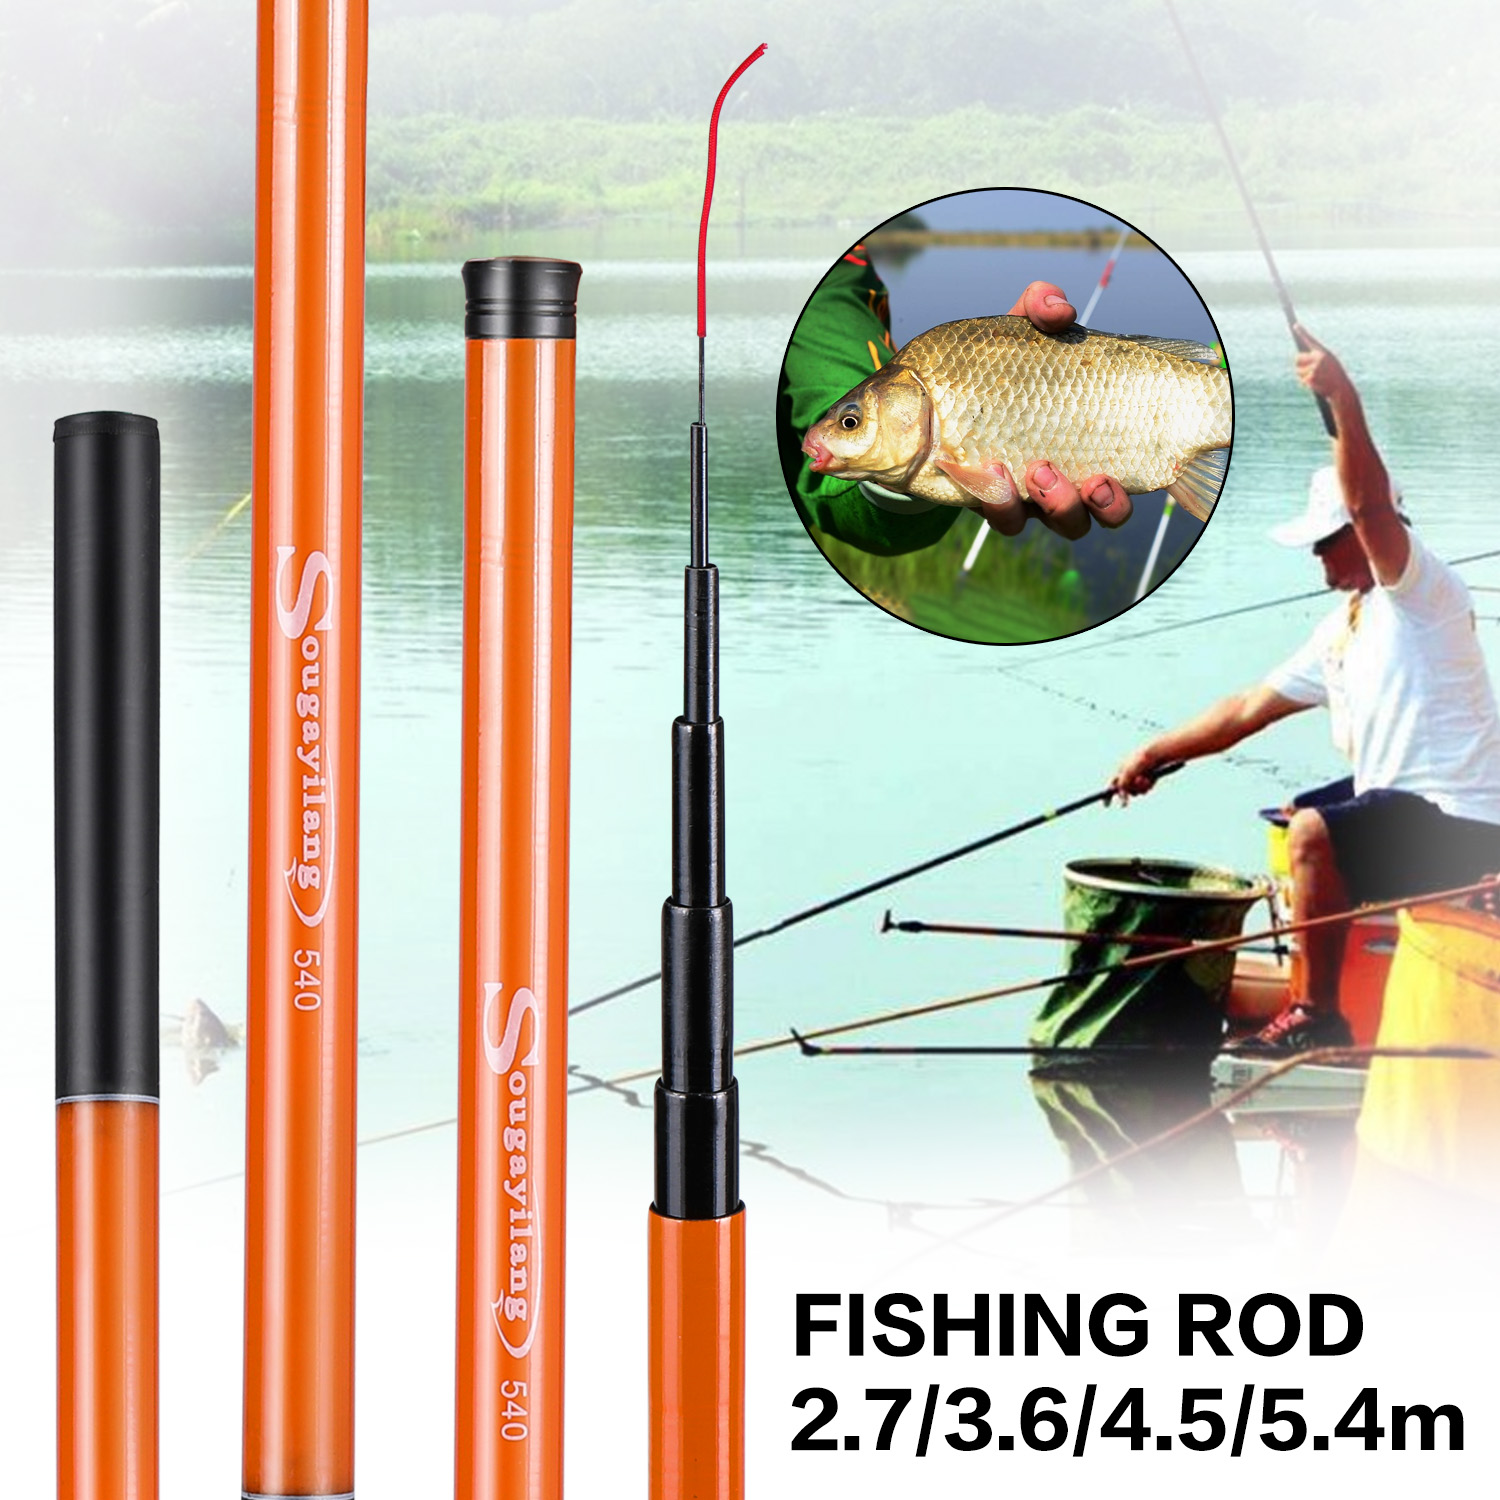 Cheap SOUGAYILANG Fishing Rod Green Fishing Pole 2.7/3.6/4.5/5.4M